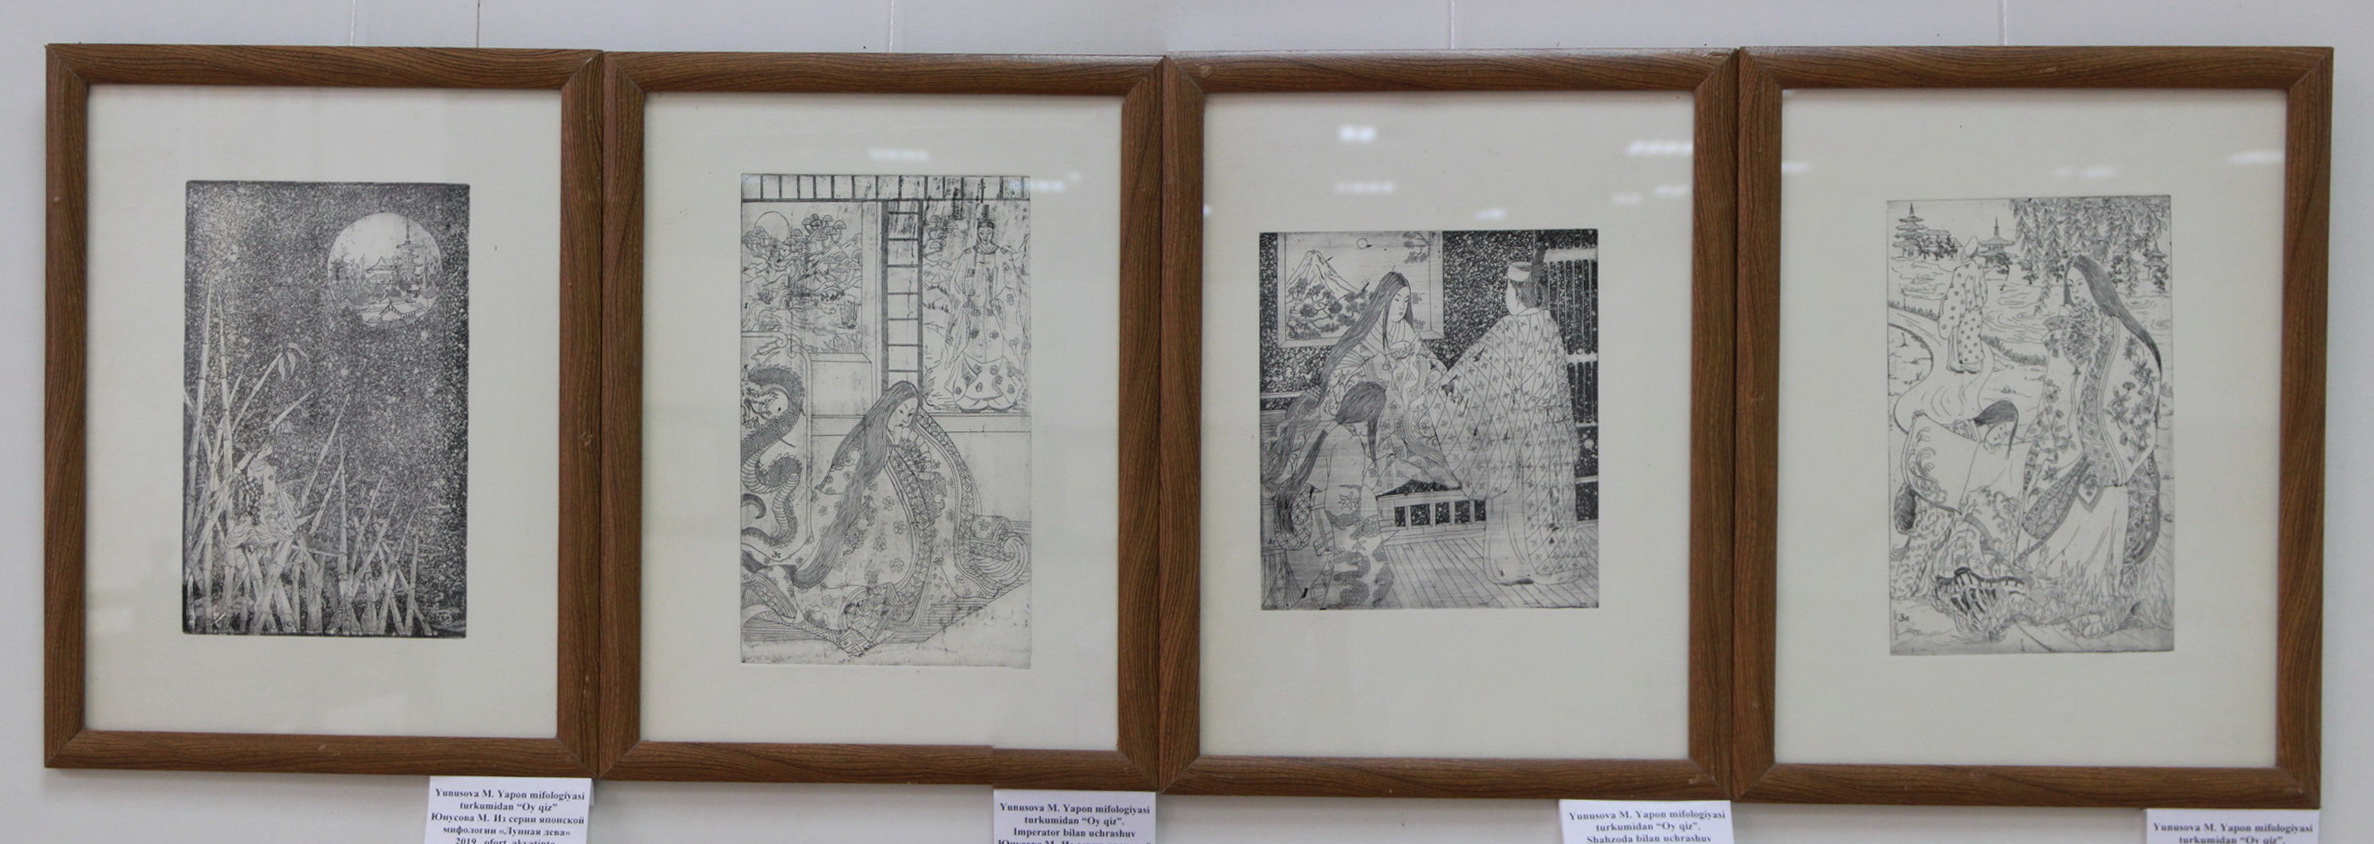 Экспозиция рисунков Юсупова М. Из серии Японской мифологии.